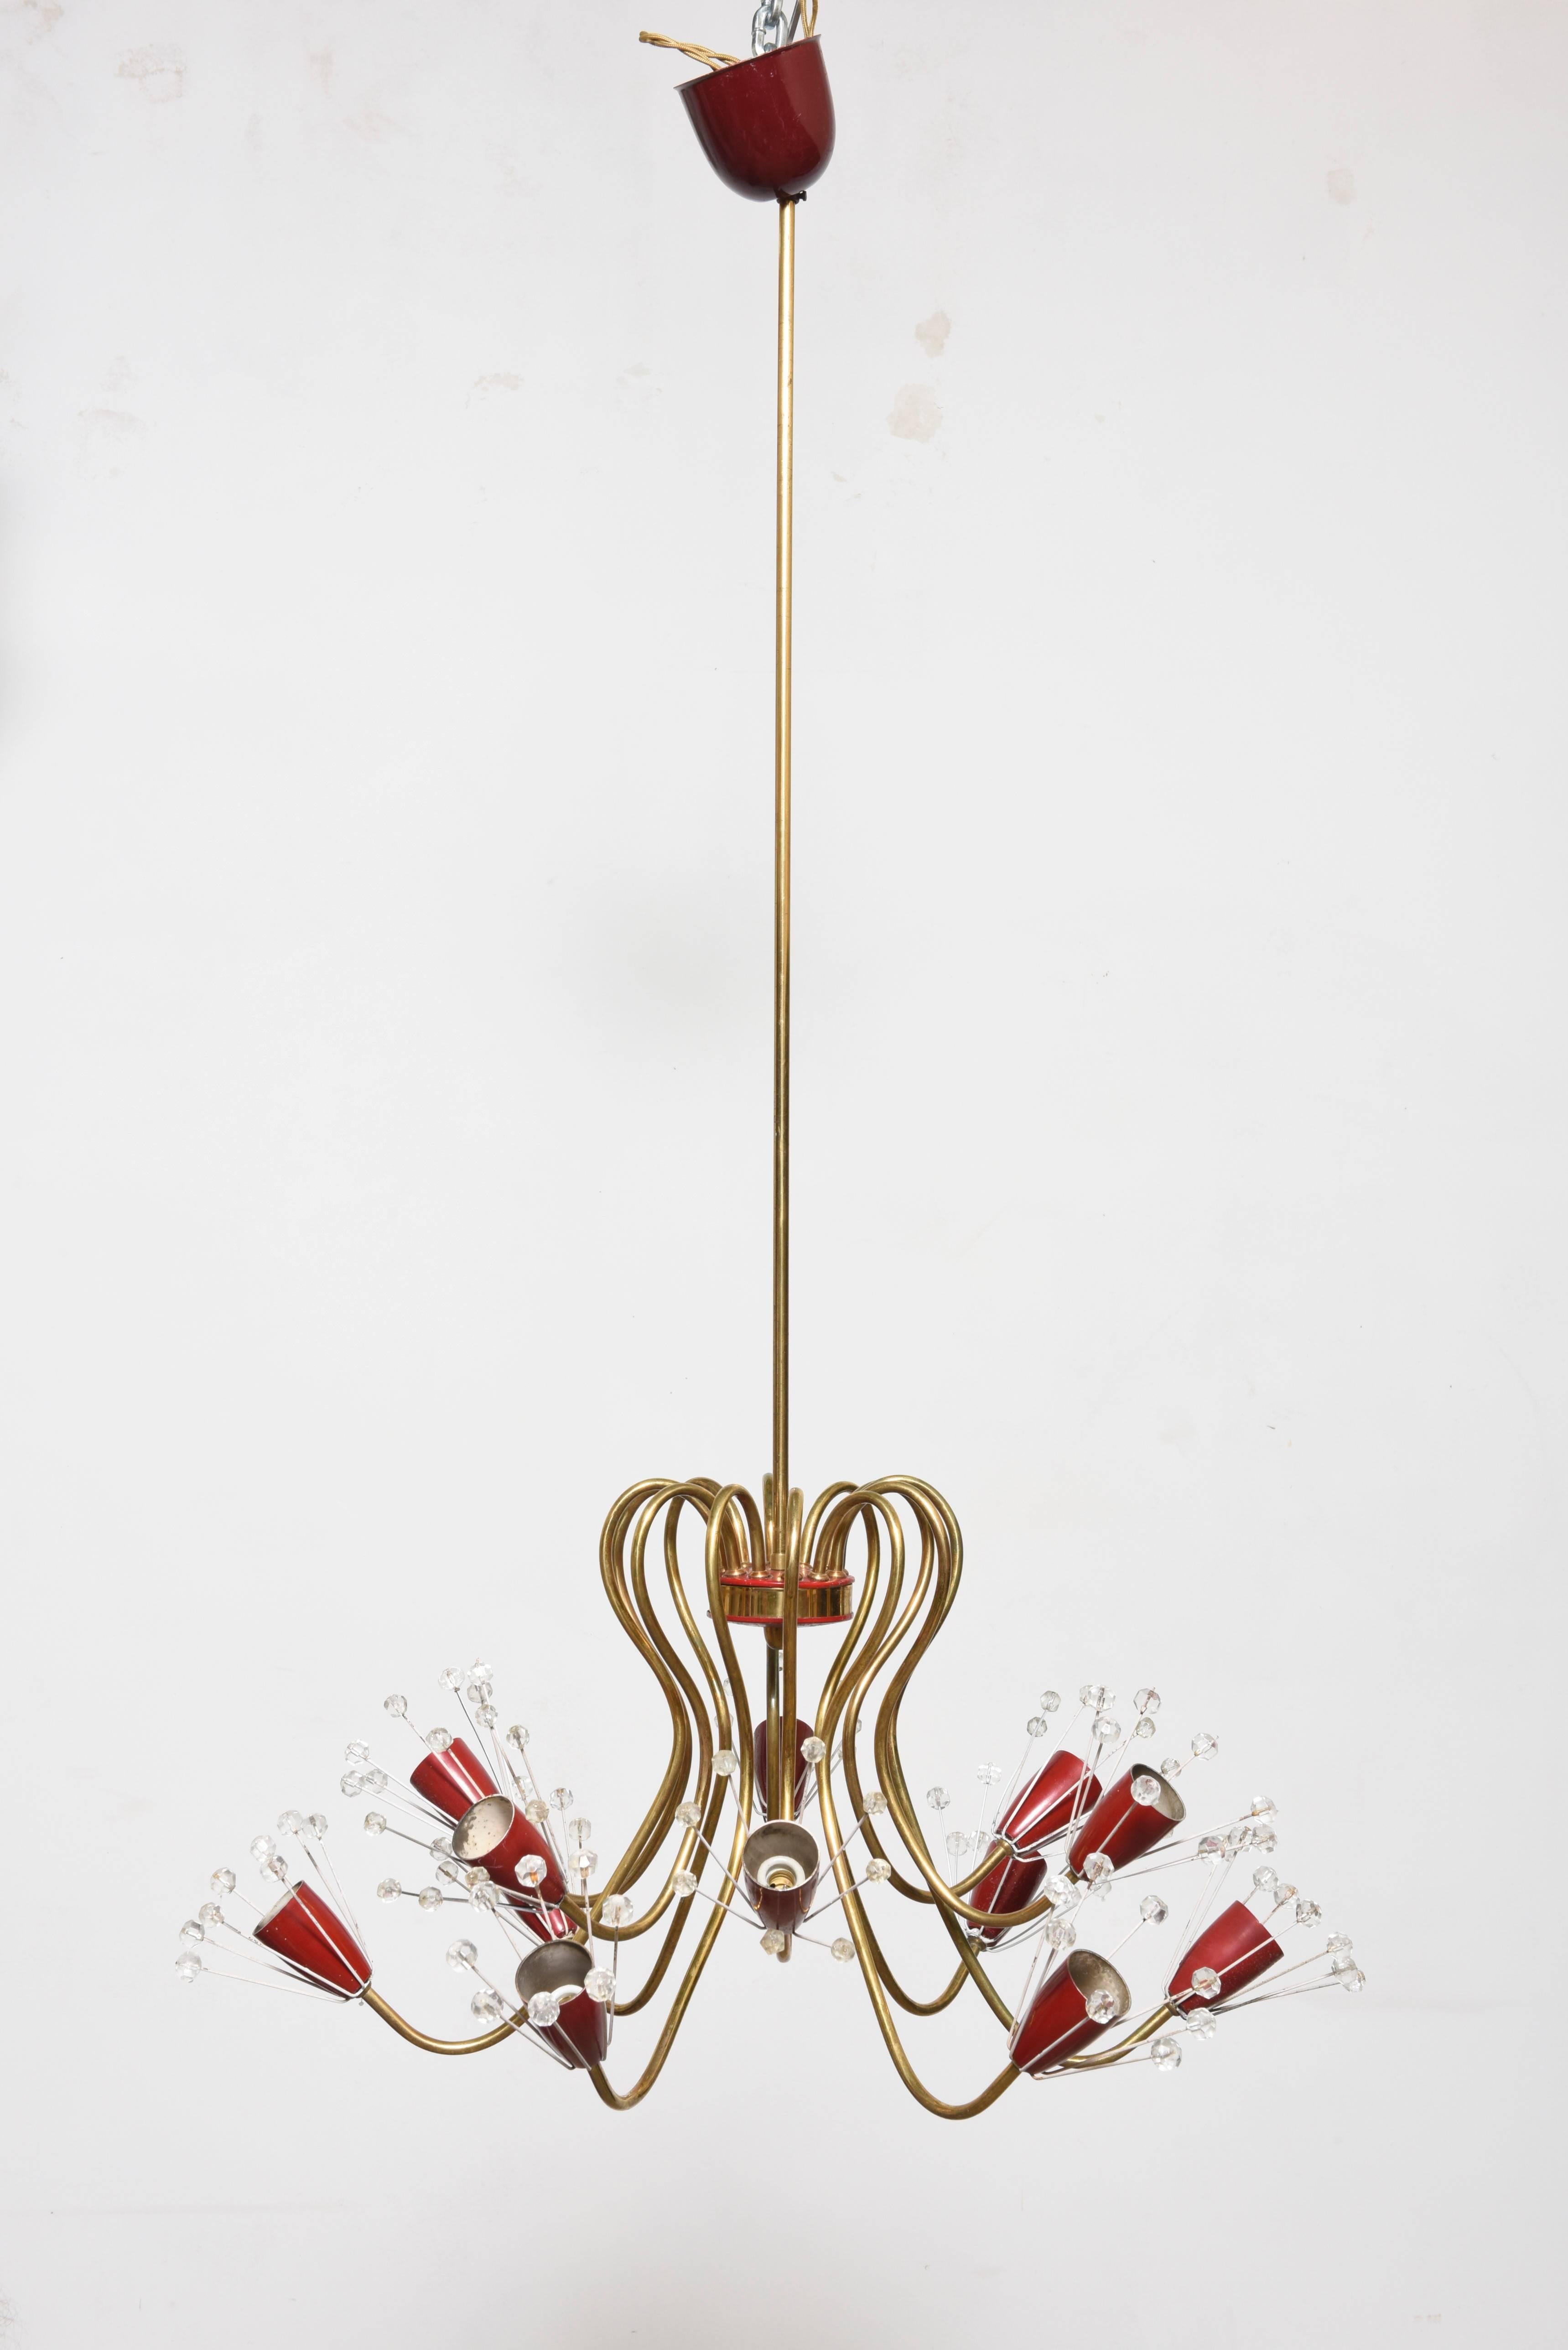 Original lustre viennois précoce par Emil Stejnar pour Rupert Nikoll des années 1950. Fait de laiton, de métal laqué rouge et de cristaux taillés à la main. Excellent état. Il peut accueillir douze ampoules à petit culot de 40 W chacune.